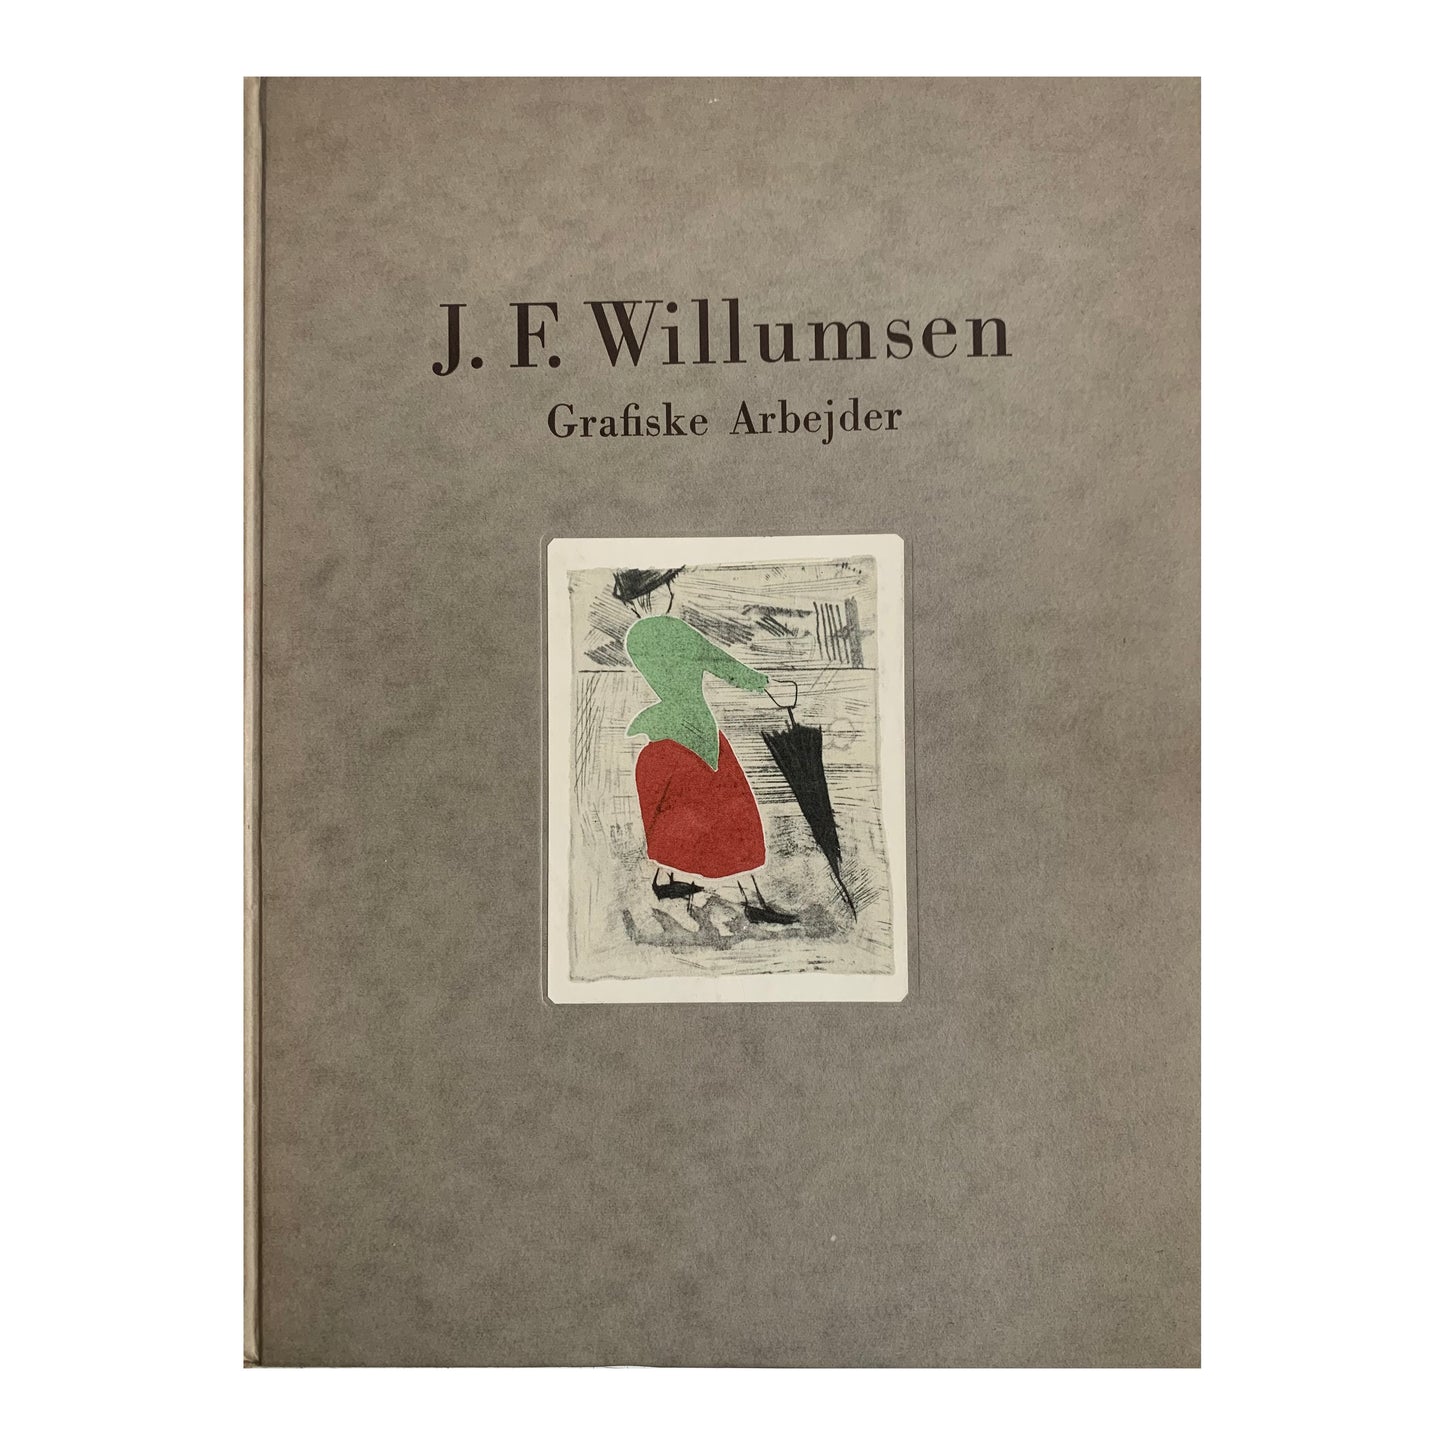 J. F. Willumsen ‘Grafiske arbejder’, 1943